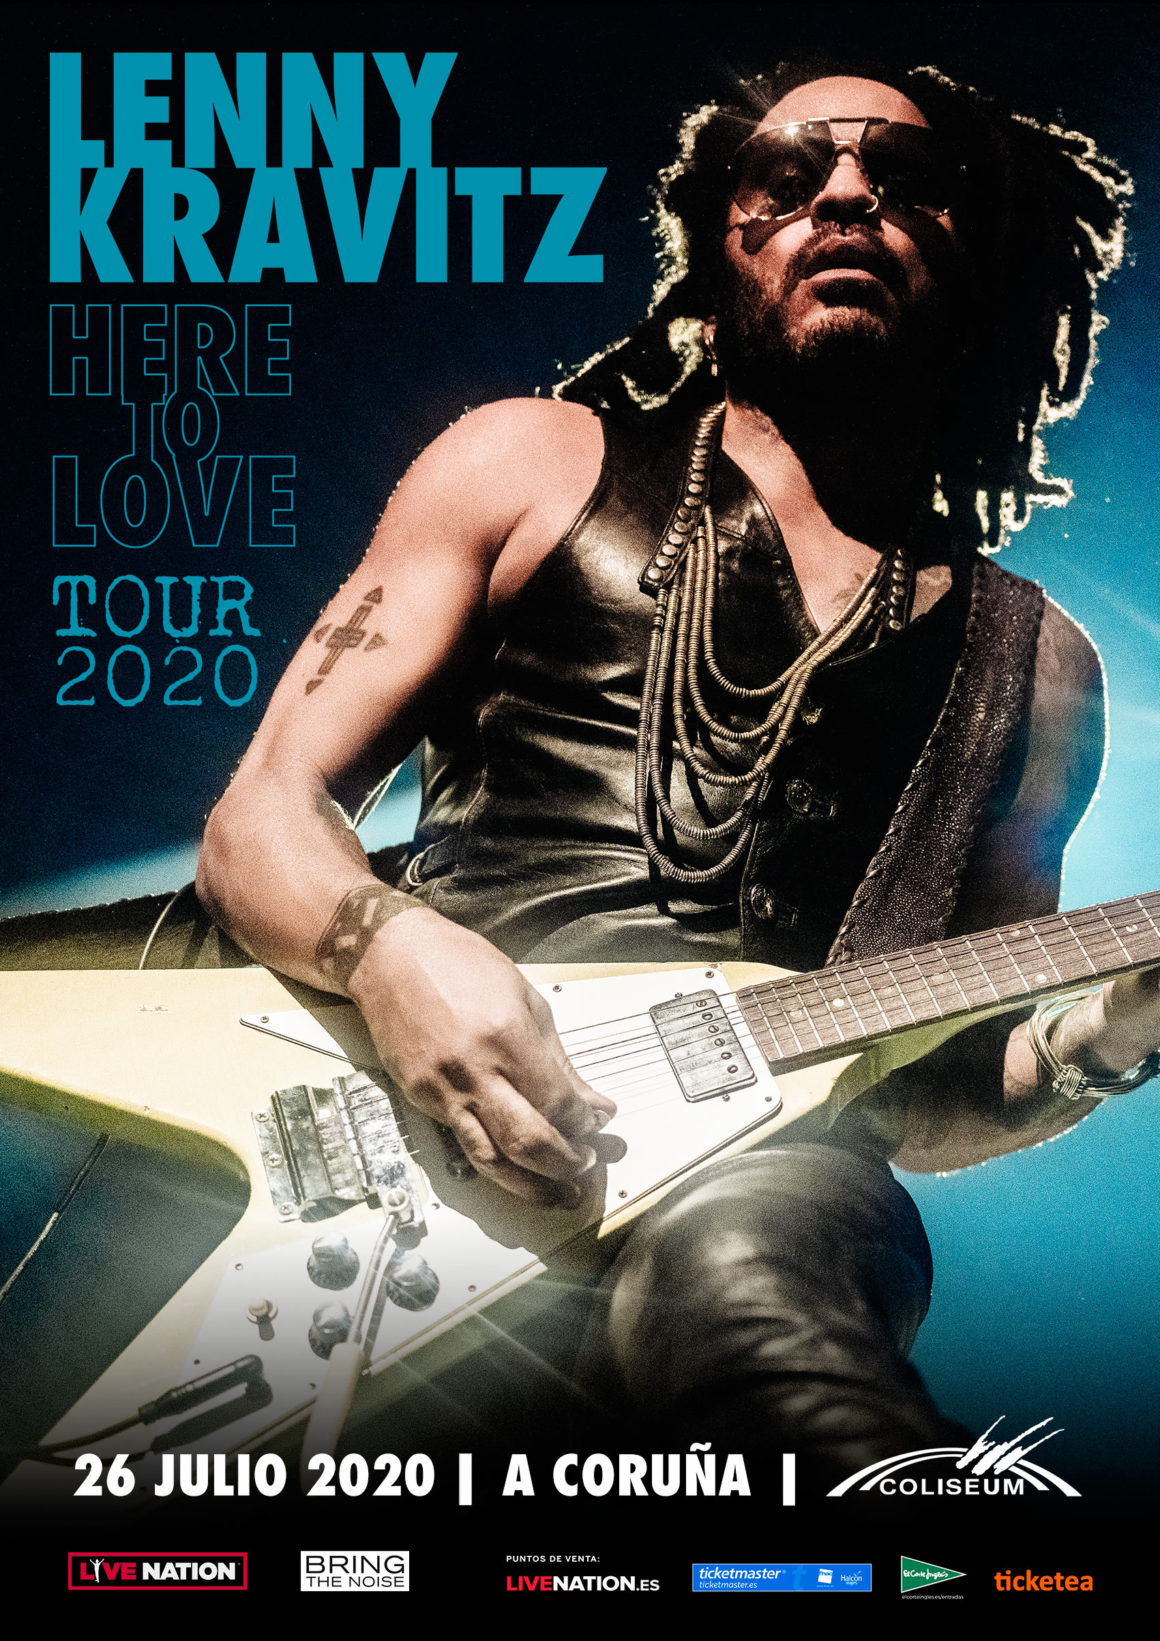 LENNY KRAVITZ anuncia nueva gira mundial «HERE TO LOVE» con parada en A Coruña el próximo 26 de julio 2020 en el Coliseum